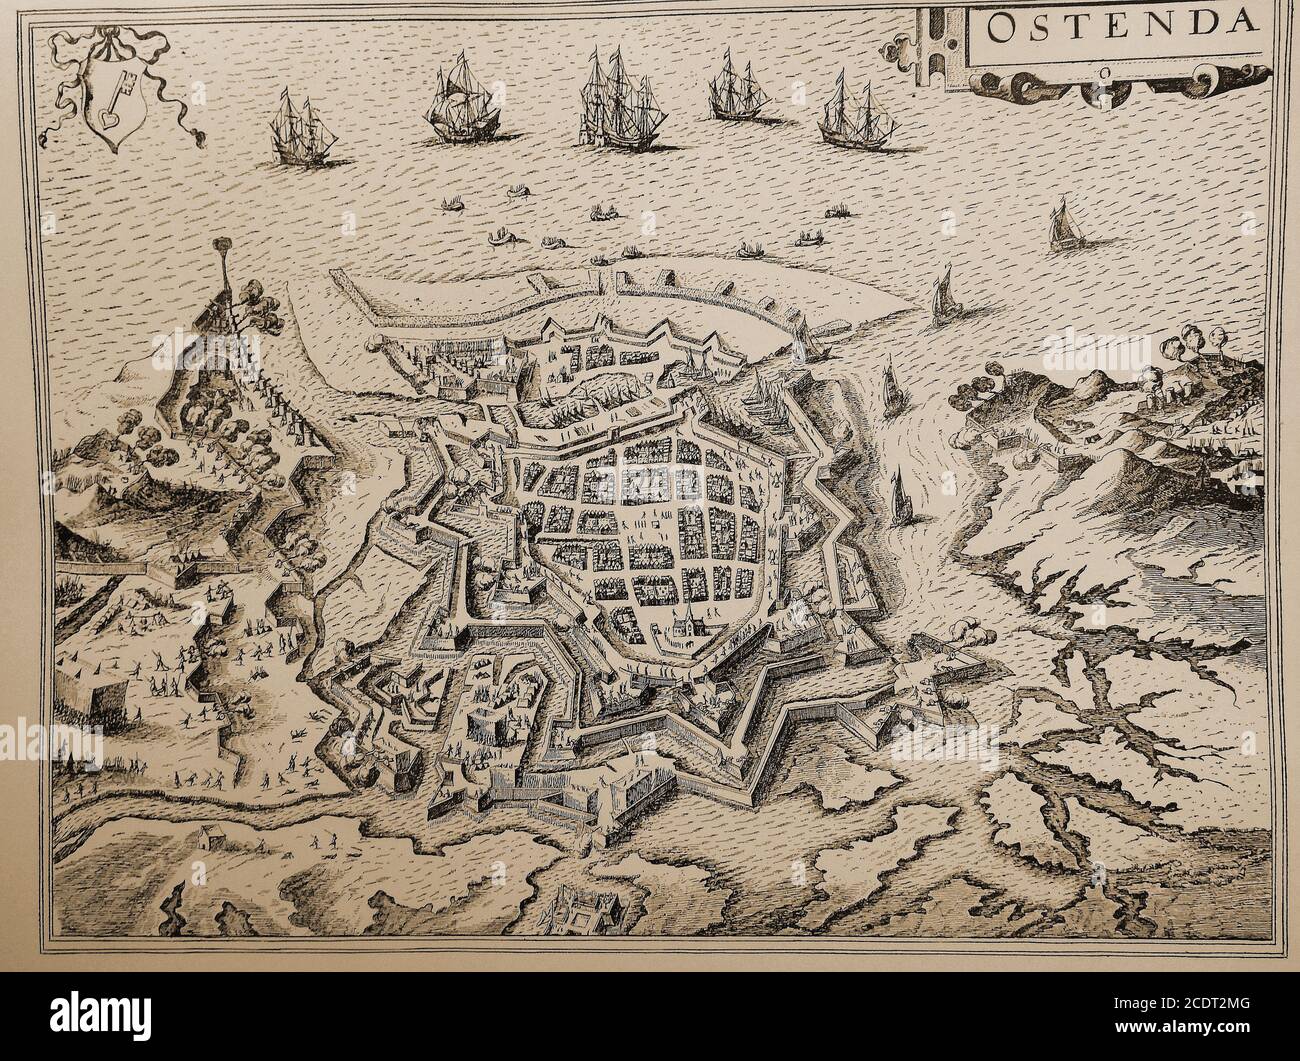 Mappa del porto DI OSTENDA - Ostenda (Ostenda / Ostenda), Belgio circa 1618. L'assedio di Ostenda, dal 1601 al 1604, di cui si diceva che "gli spagnoli assalirono gli inattaccabili e gli olandesi difesero gli indifendibili", costò 80,000 morti o feriti, rendendolo l'unica battaglia sanguinosa della guerra degli ottanta anni. Seguì una tregua, ma il risultato fu che il porto divenne un paradiso per i pirati (Dunkeristi) e i privatatori. X Foto Stock